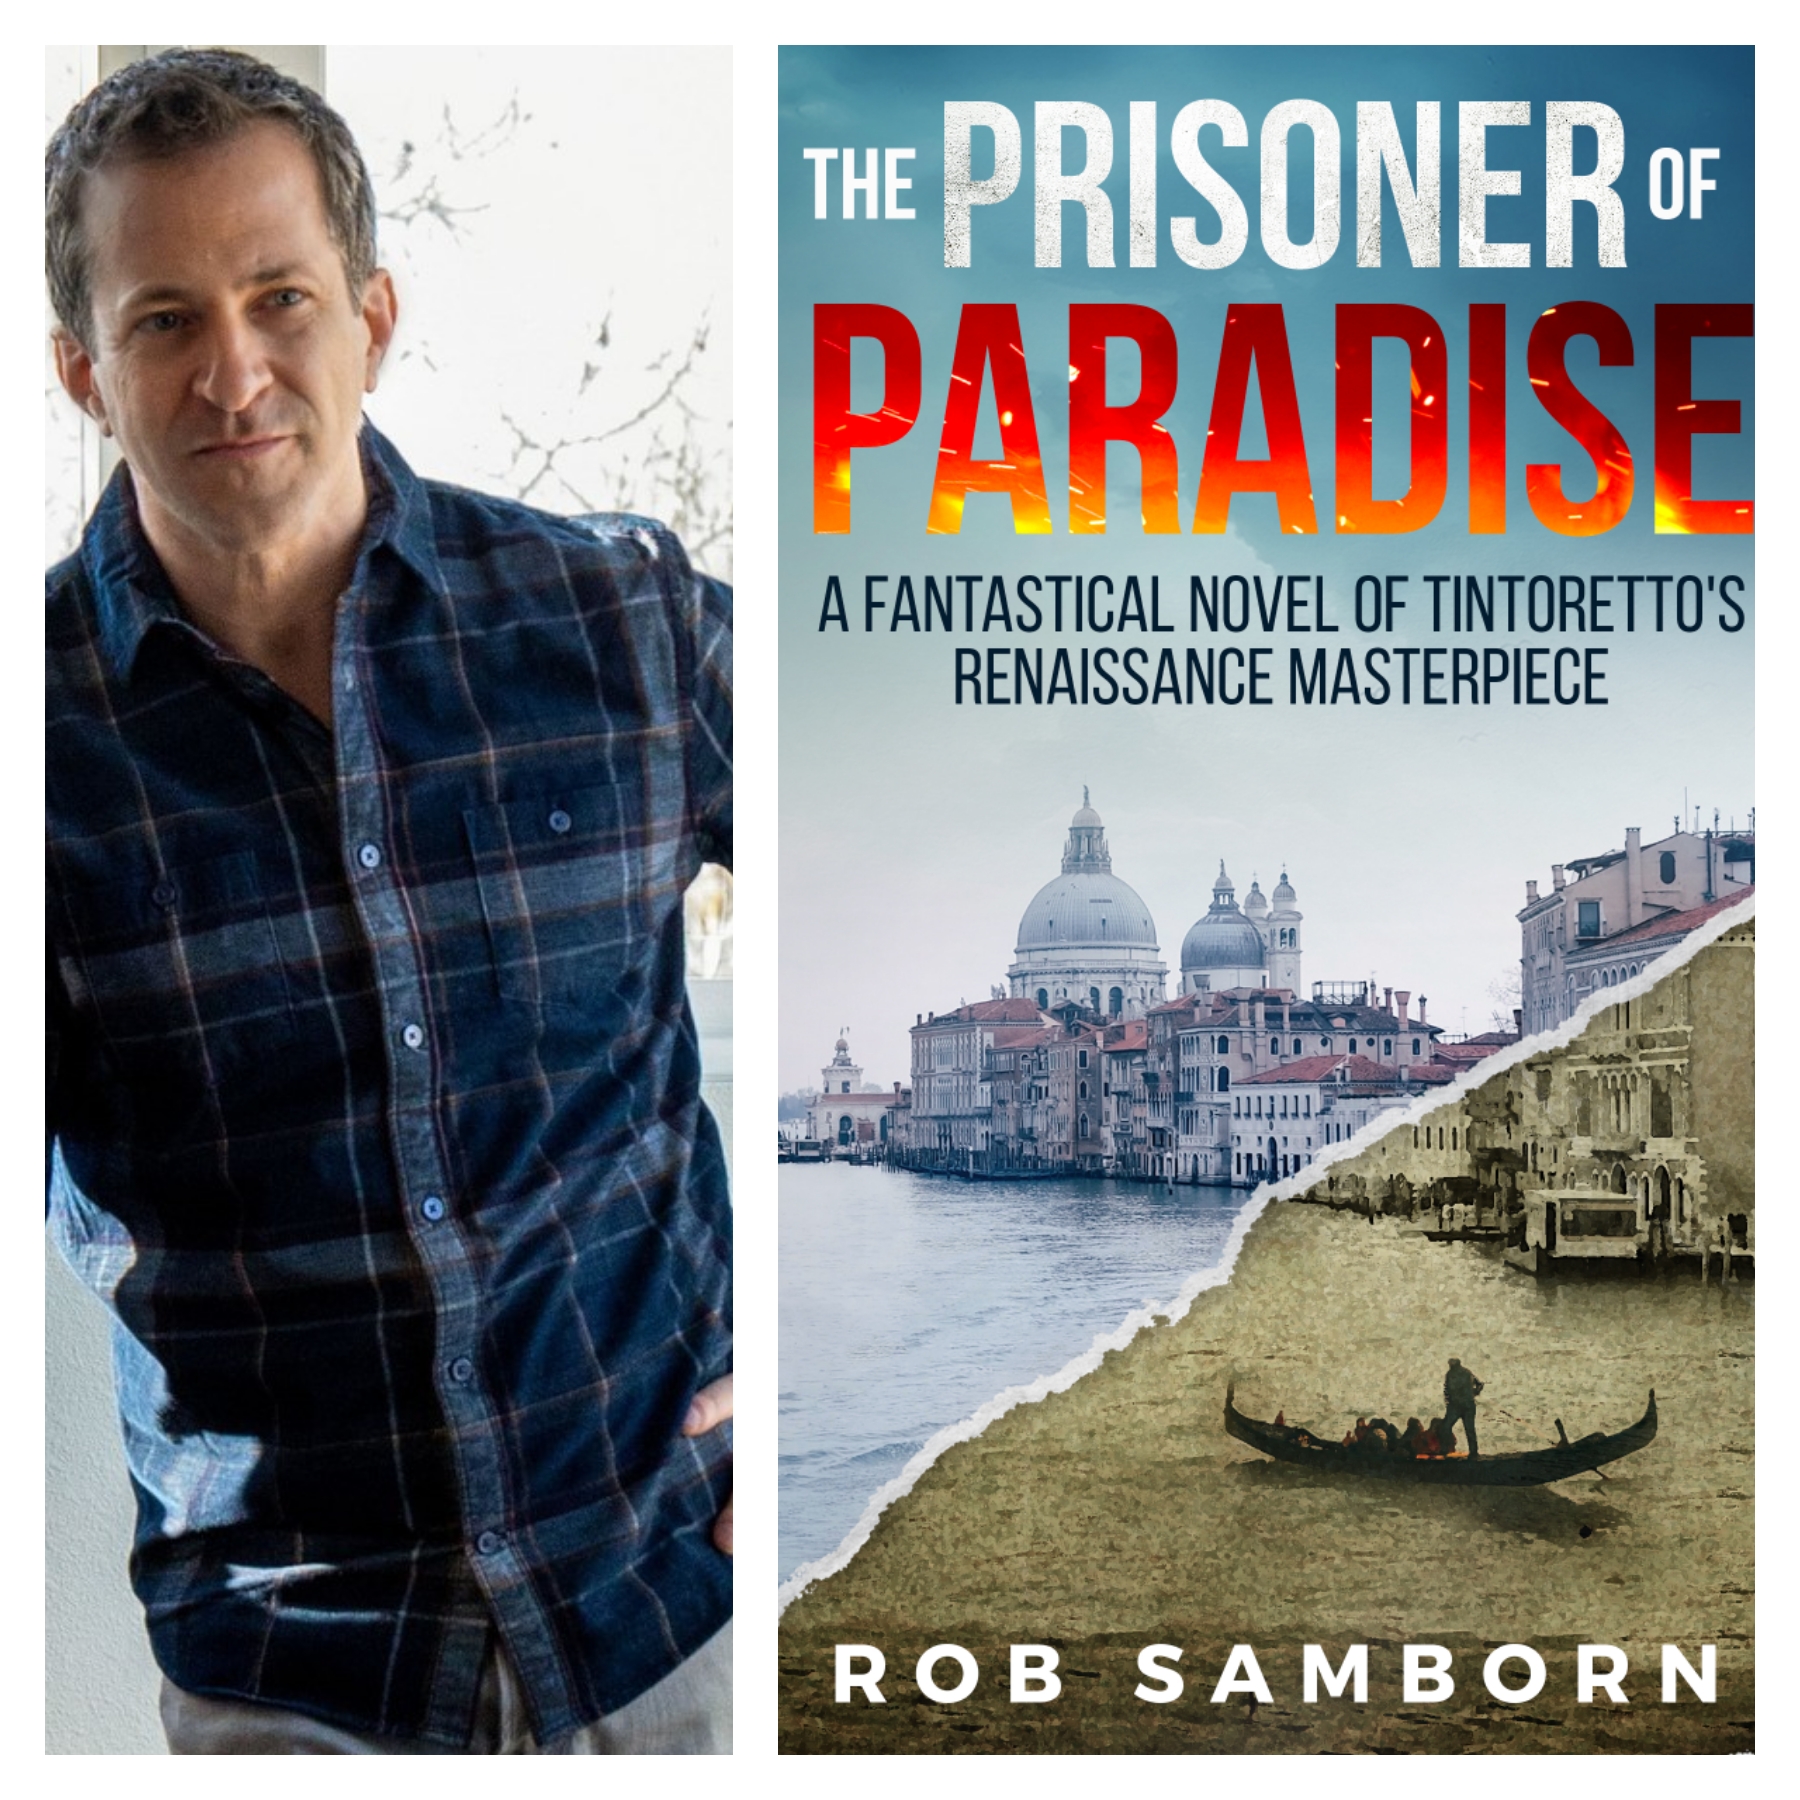 Rob Samborn